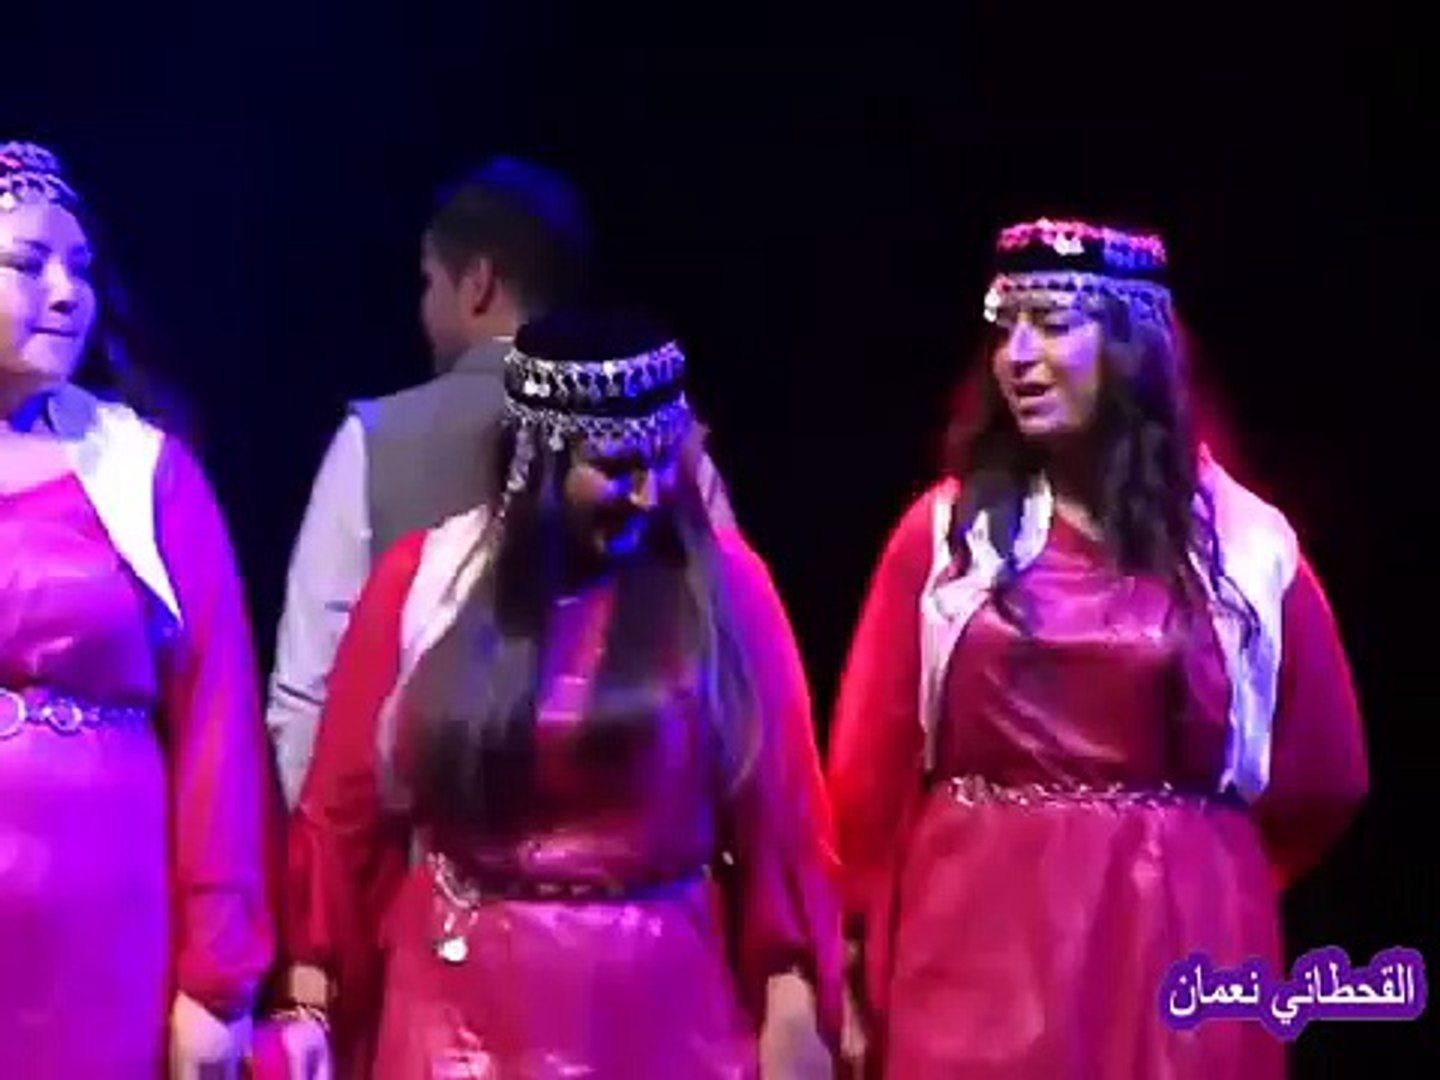 رقص بنات على اروع اغنية يمنية راقصة ترقص اللي ما يرقص حبيبي لا تعذبني -  video Dailymotion